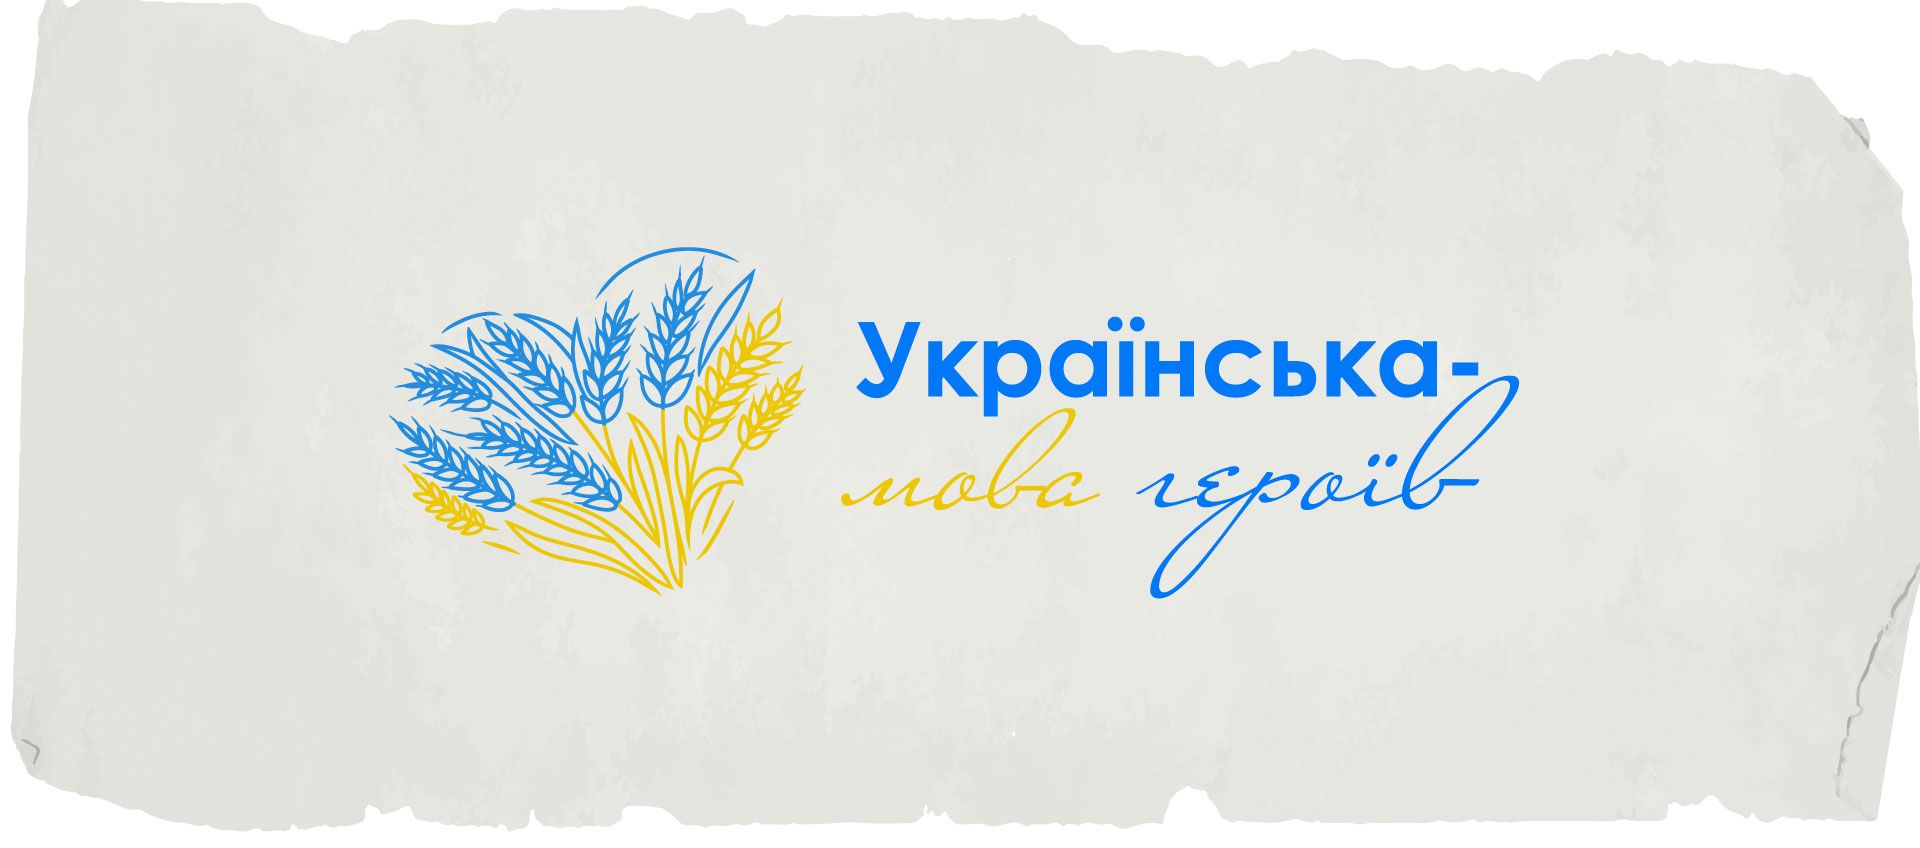 Українська мова - як українці можуть відвоювати русифікований простір - 24 Канал - Освіта